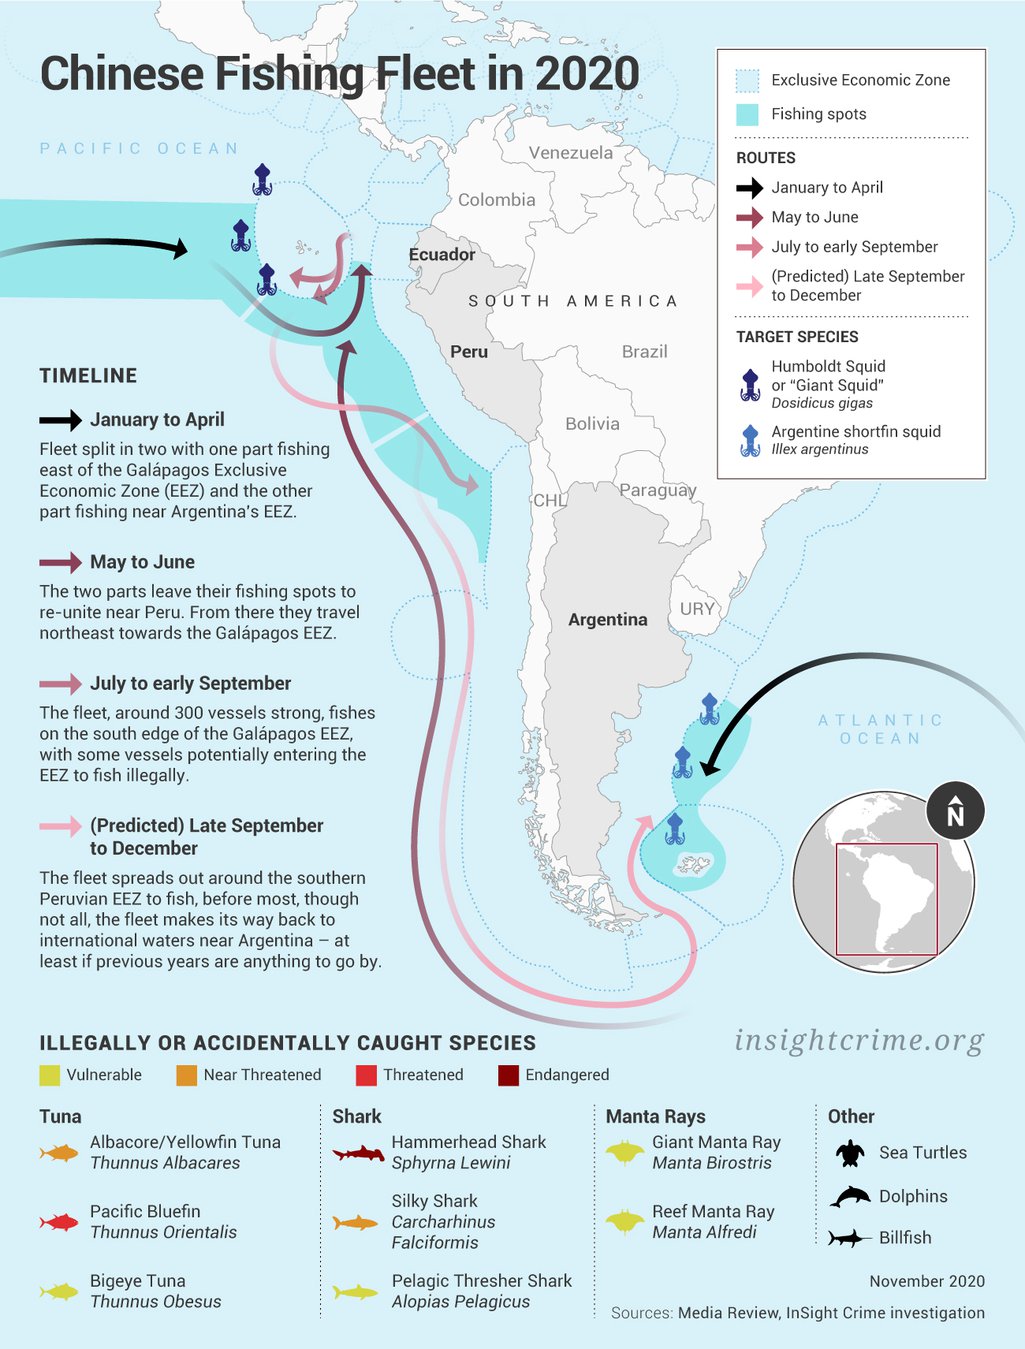 Latinoamerica_Chinese-Fishing-Fleet-in-2020_InSight-Crime_04-11-2020.jpg